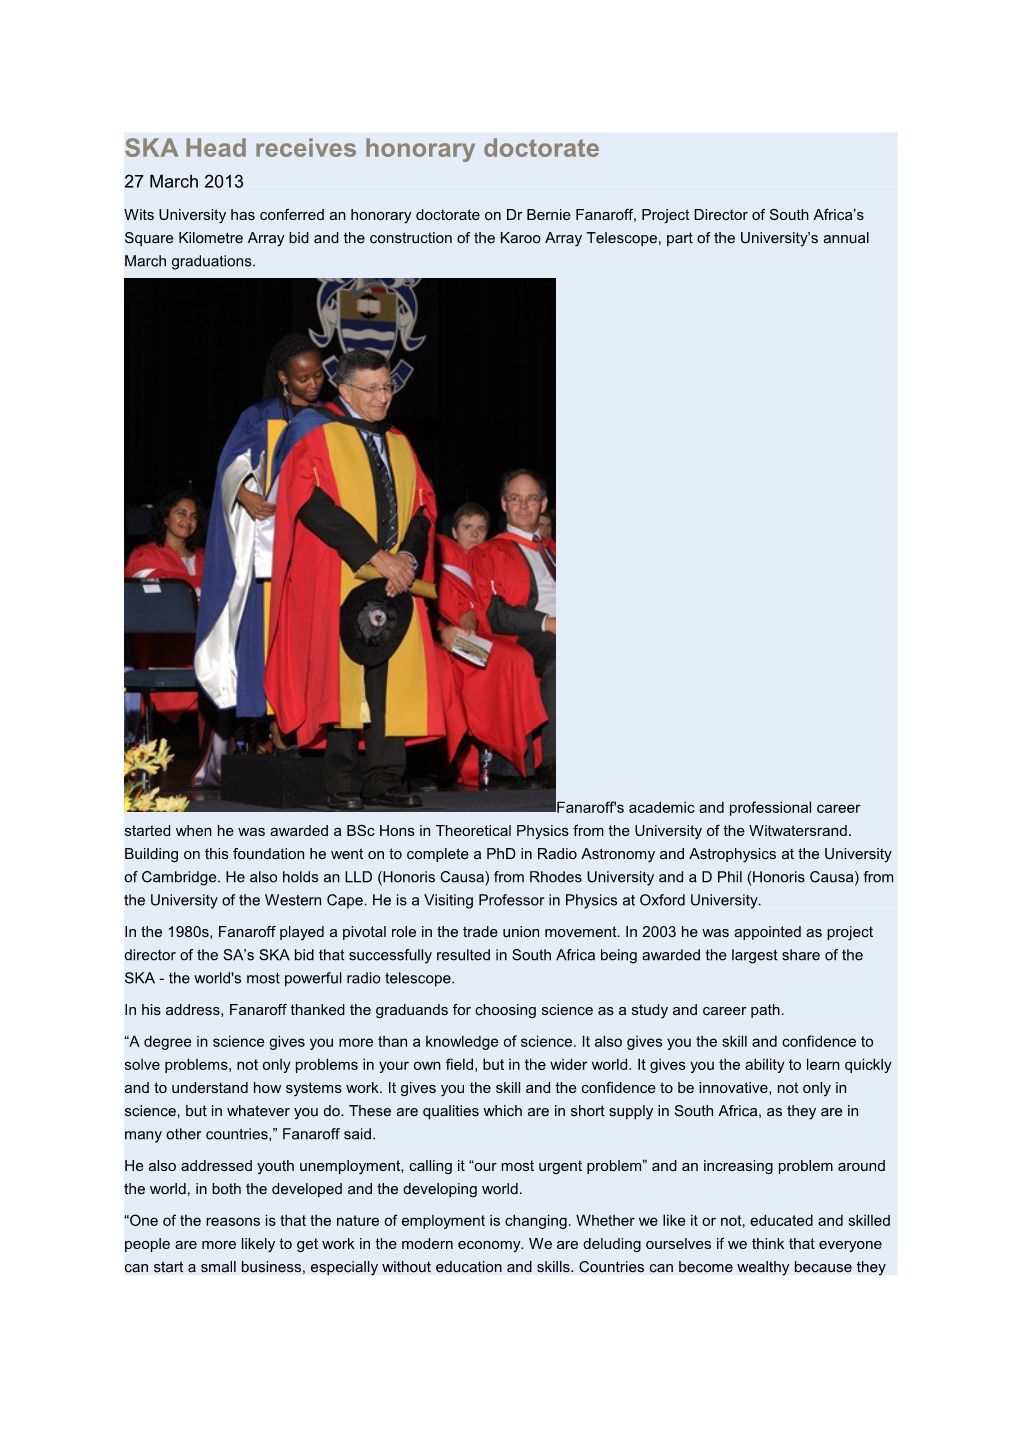 SKA Head Receives Honorary Doctorate